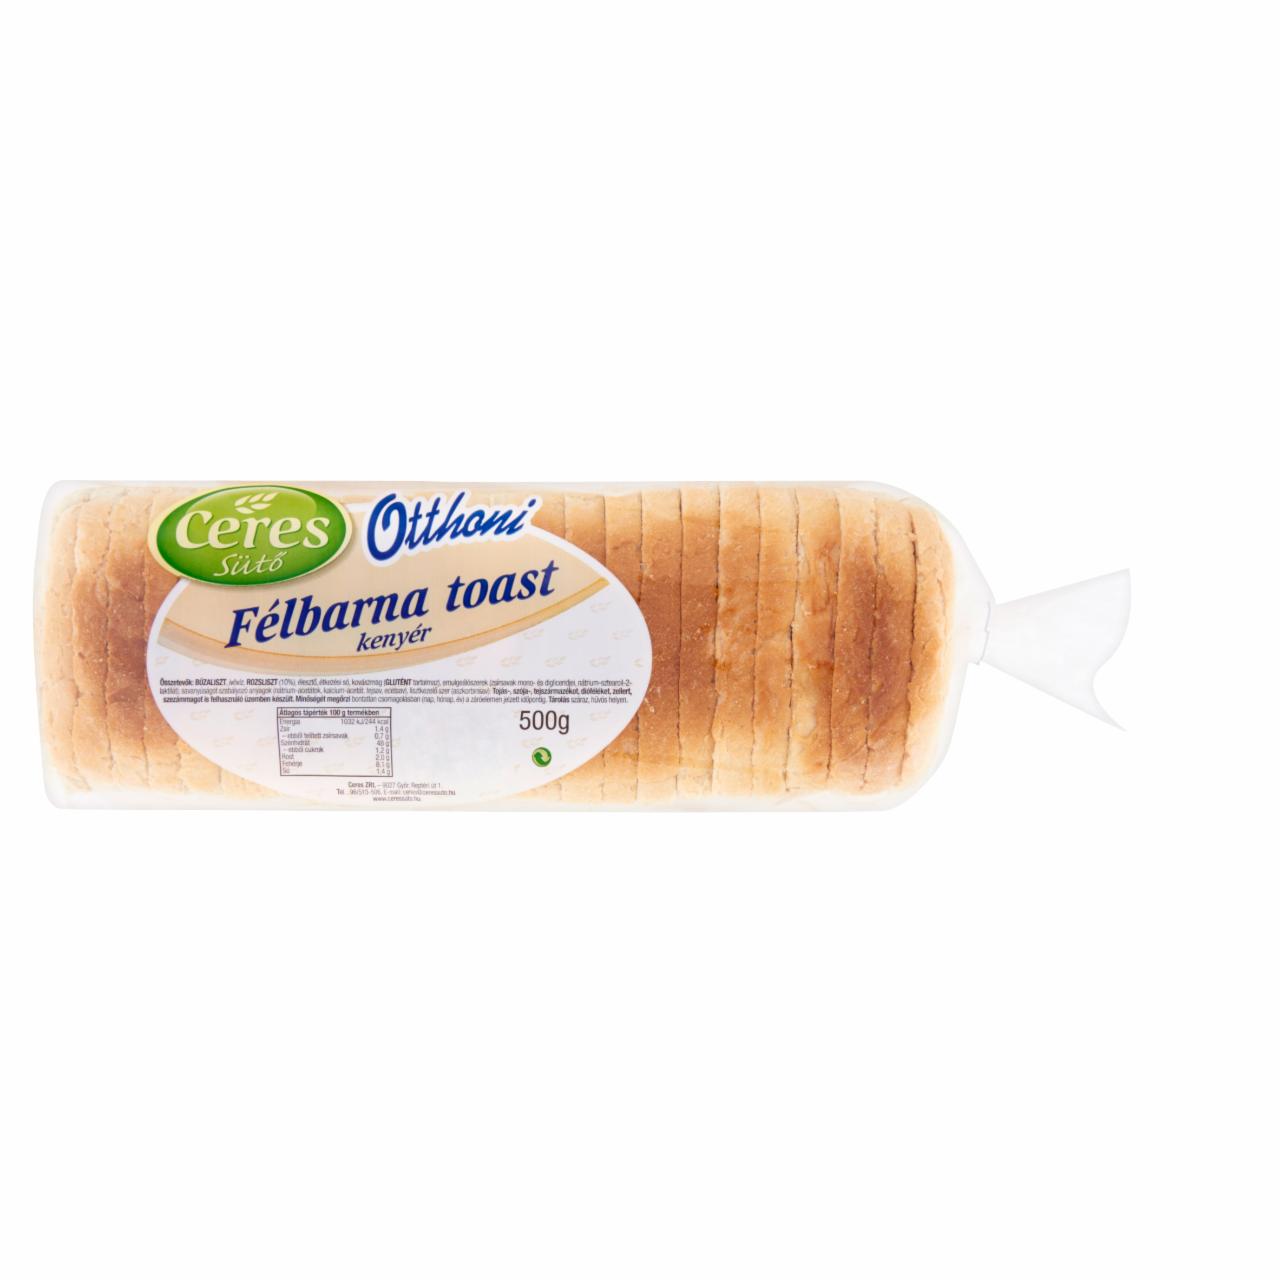 Képek - Ceres Sütő Otthoni félbarna toast kenyér 500 g